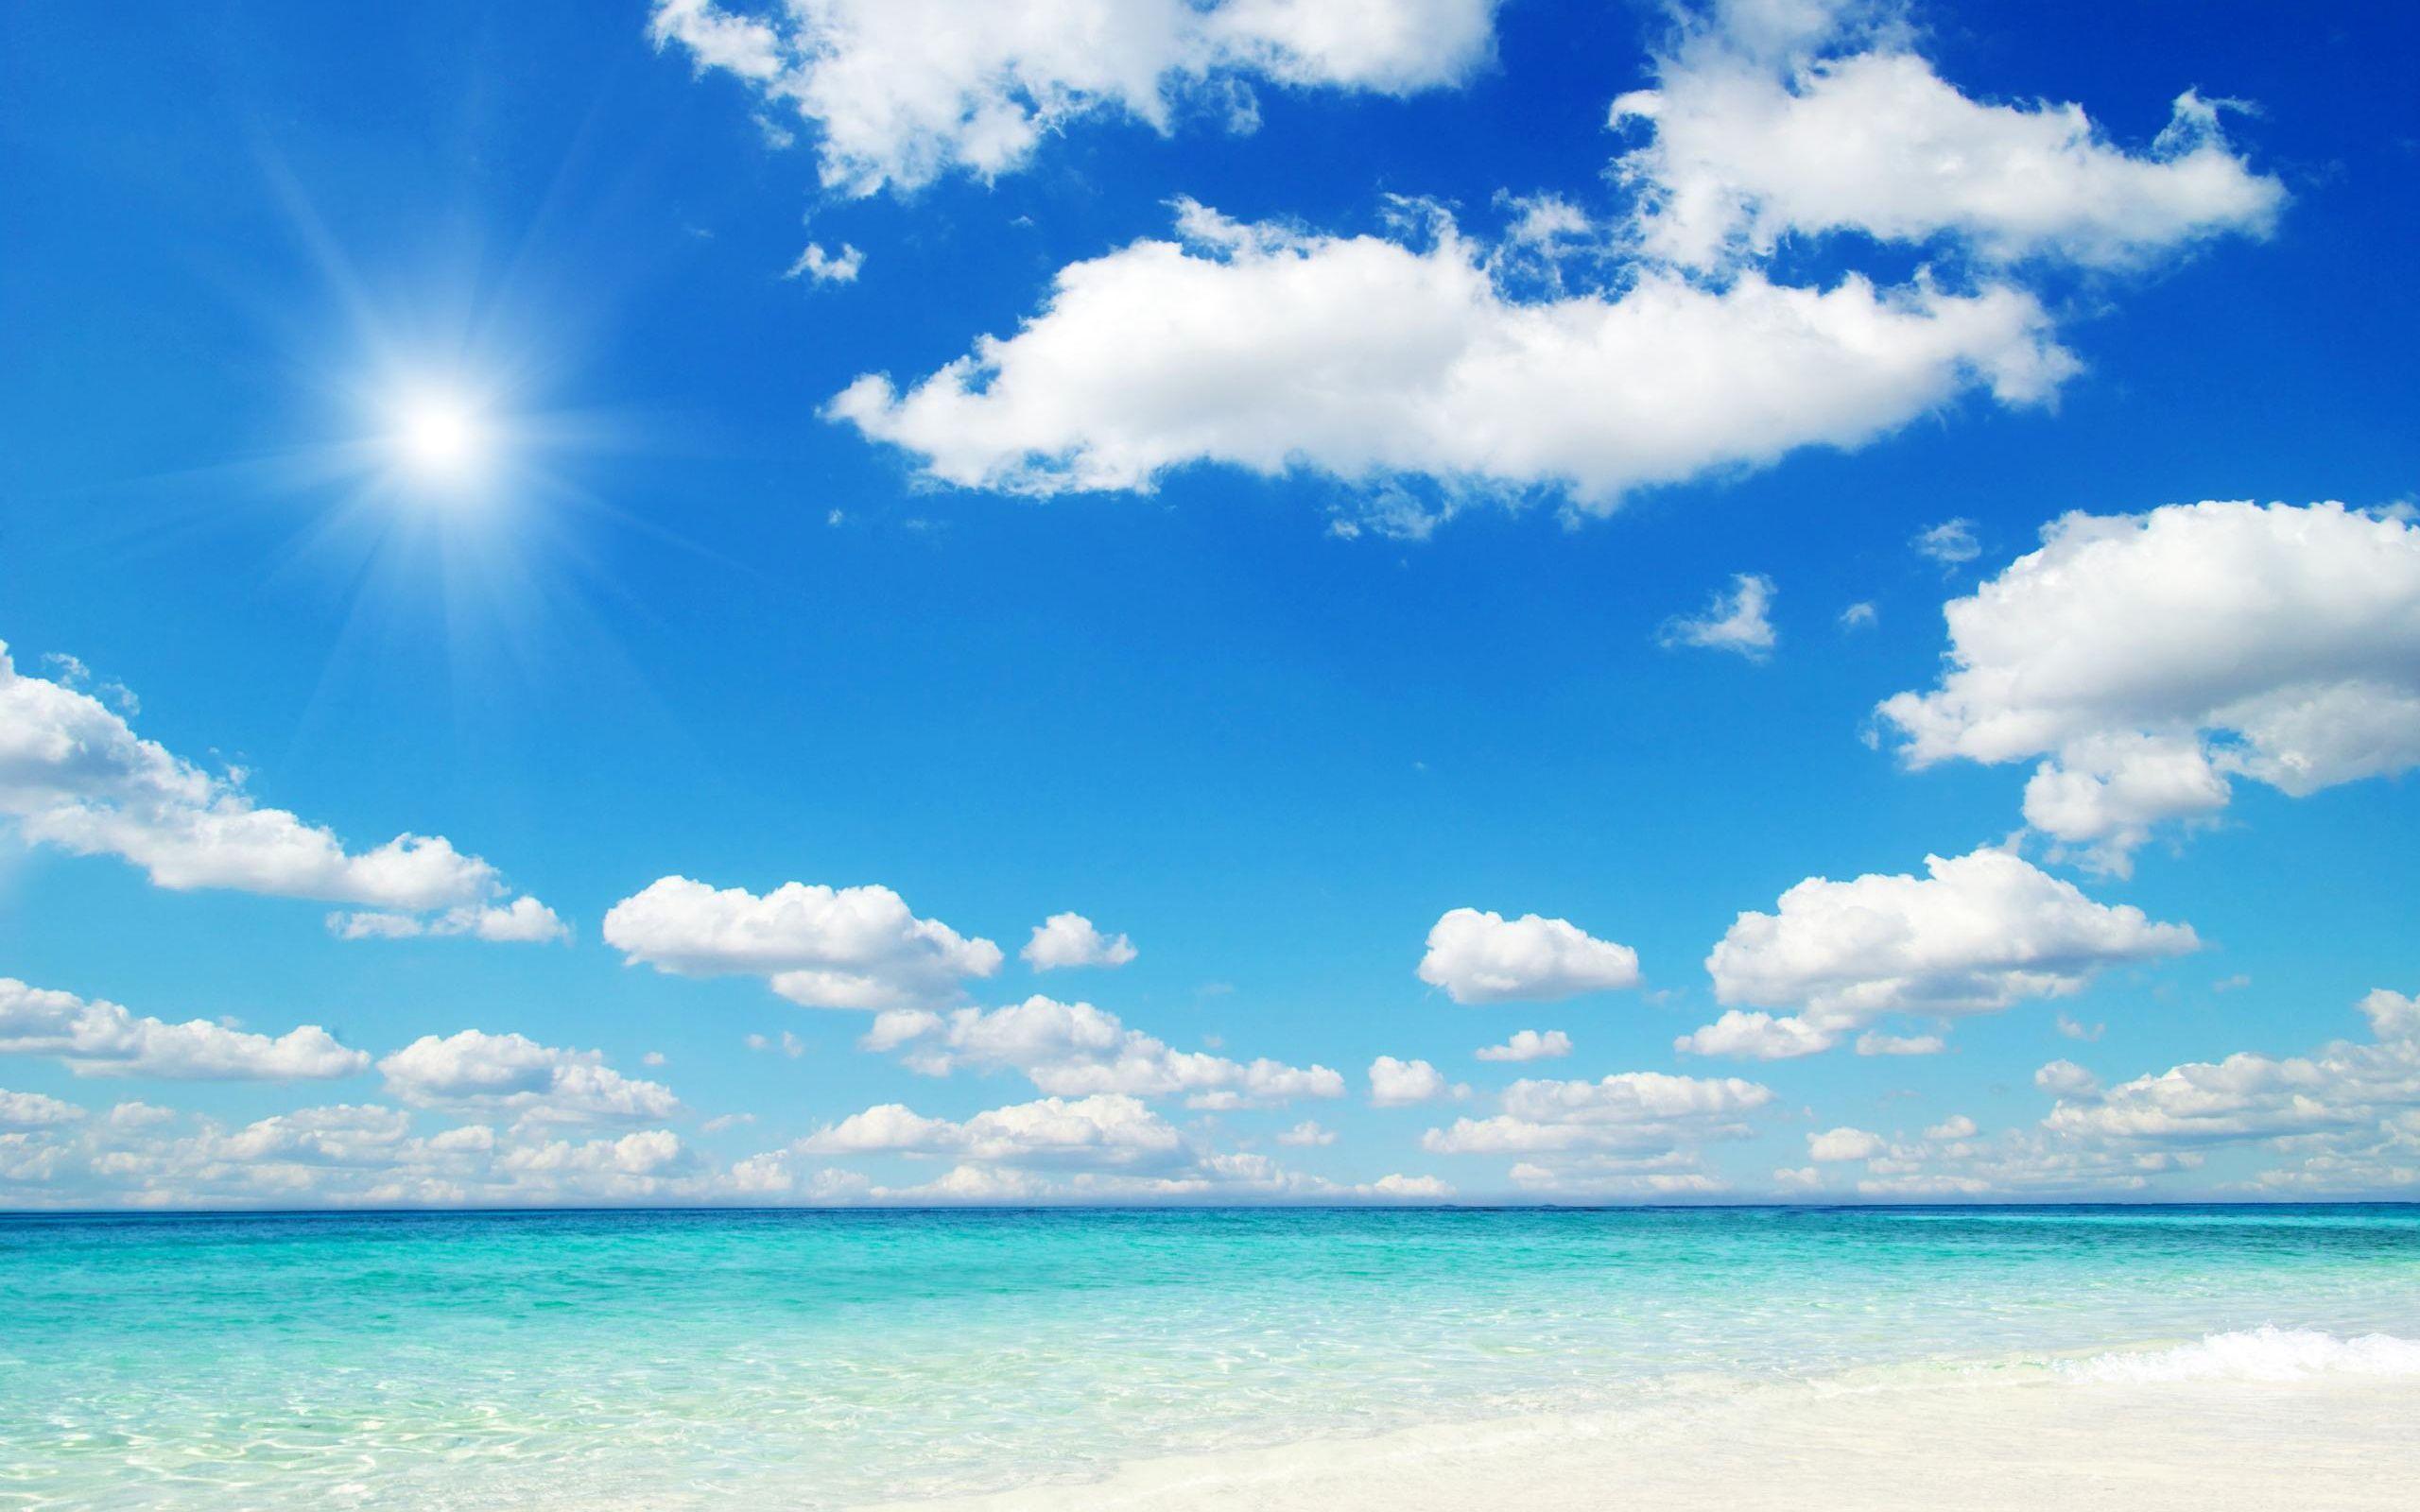 Bãi biển xanh là nơi hợp lý để tận hưởng một mùa hè trong lành và vui vẻ. Hình ảnh bãi biển xanh sẽ khiến bạn say mê với màu sắc sống động của bầu trời, đại dương, cát và các loài thực vật vùng biển xanh mát.